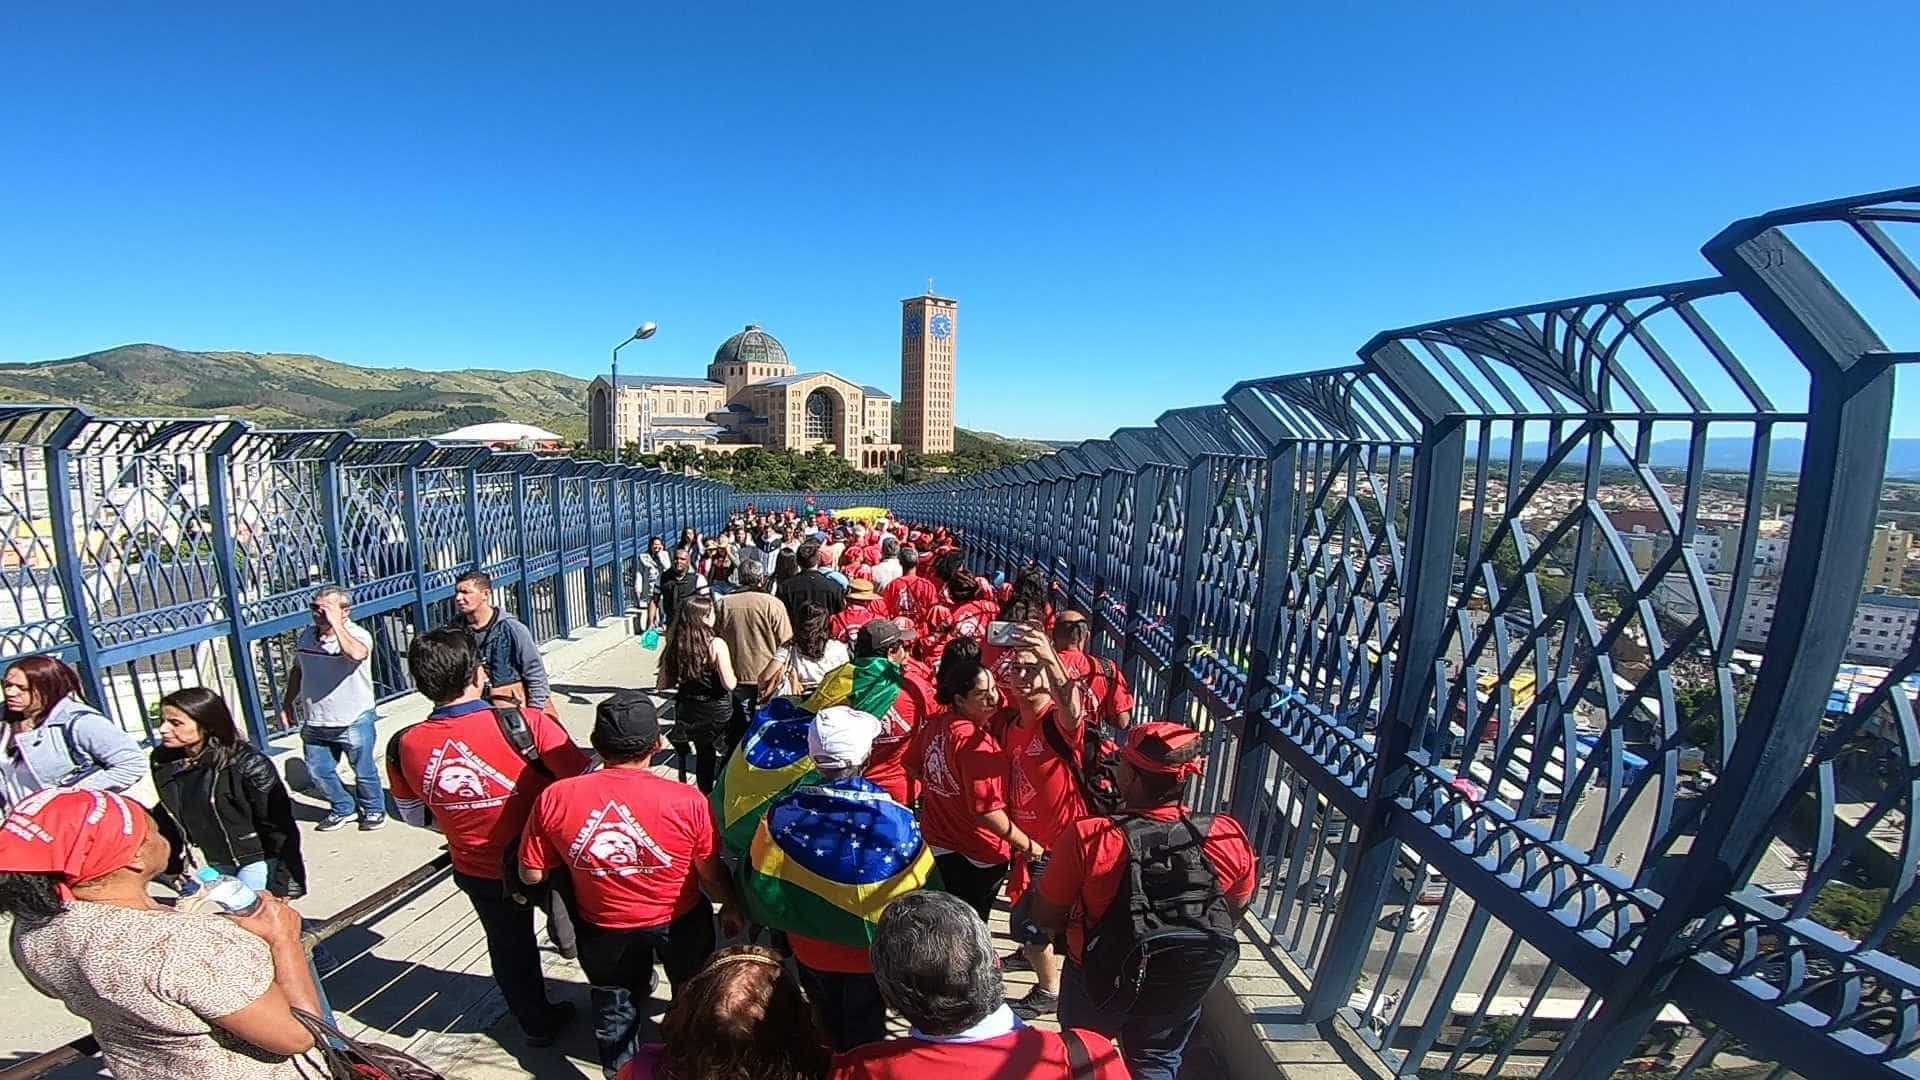 Mesmo com crítica do santuário, petistas vão a Aparecida rezar por Lula